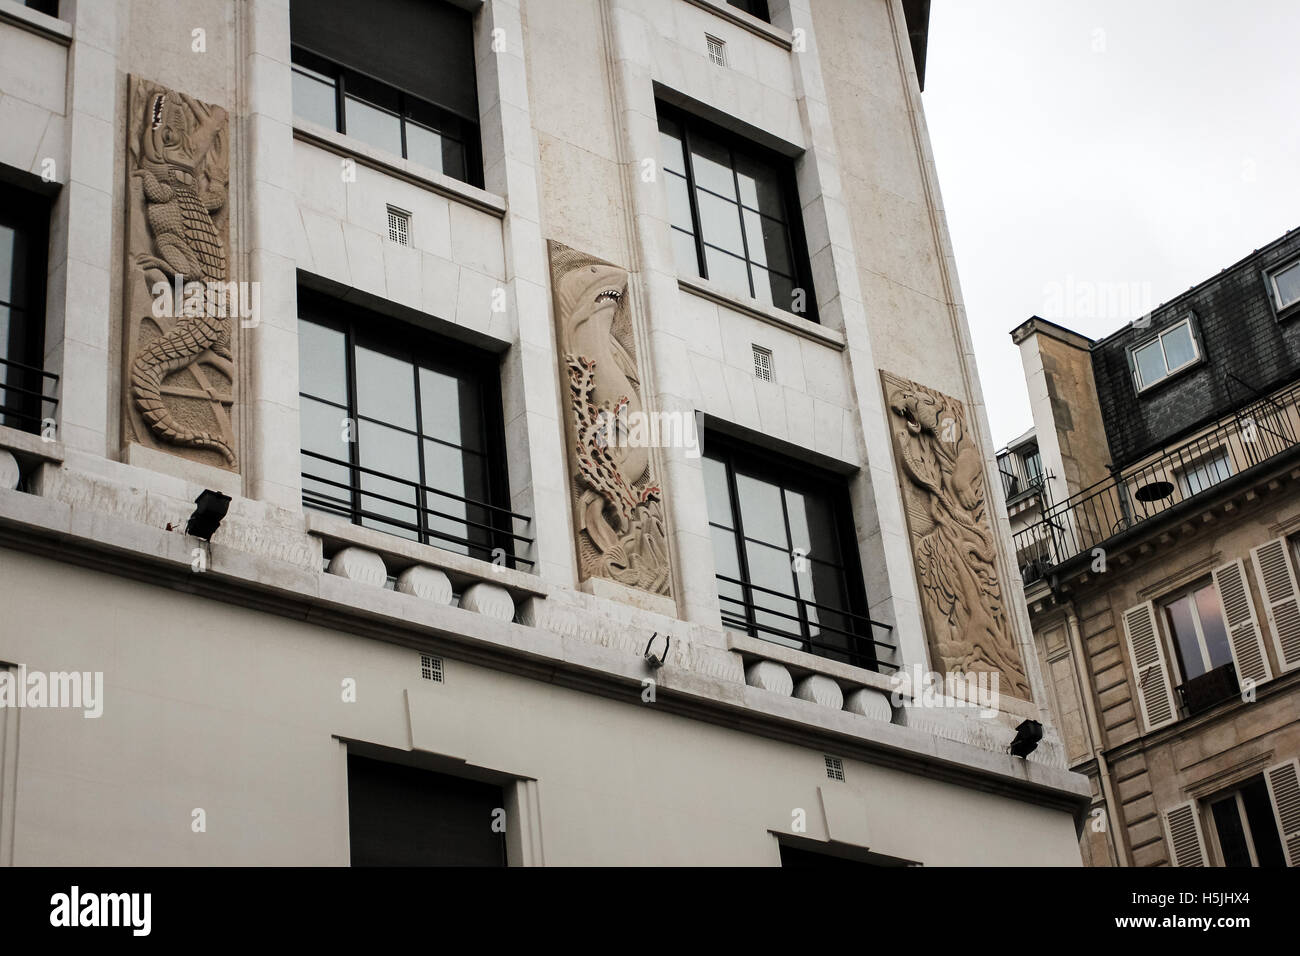 PARIS, FRANCE - 31 décembre 2011 : Paris art-nouveau style dans un décor d'architecture Banque D'Images